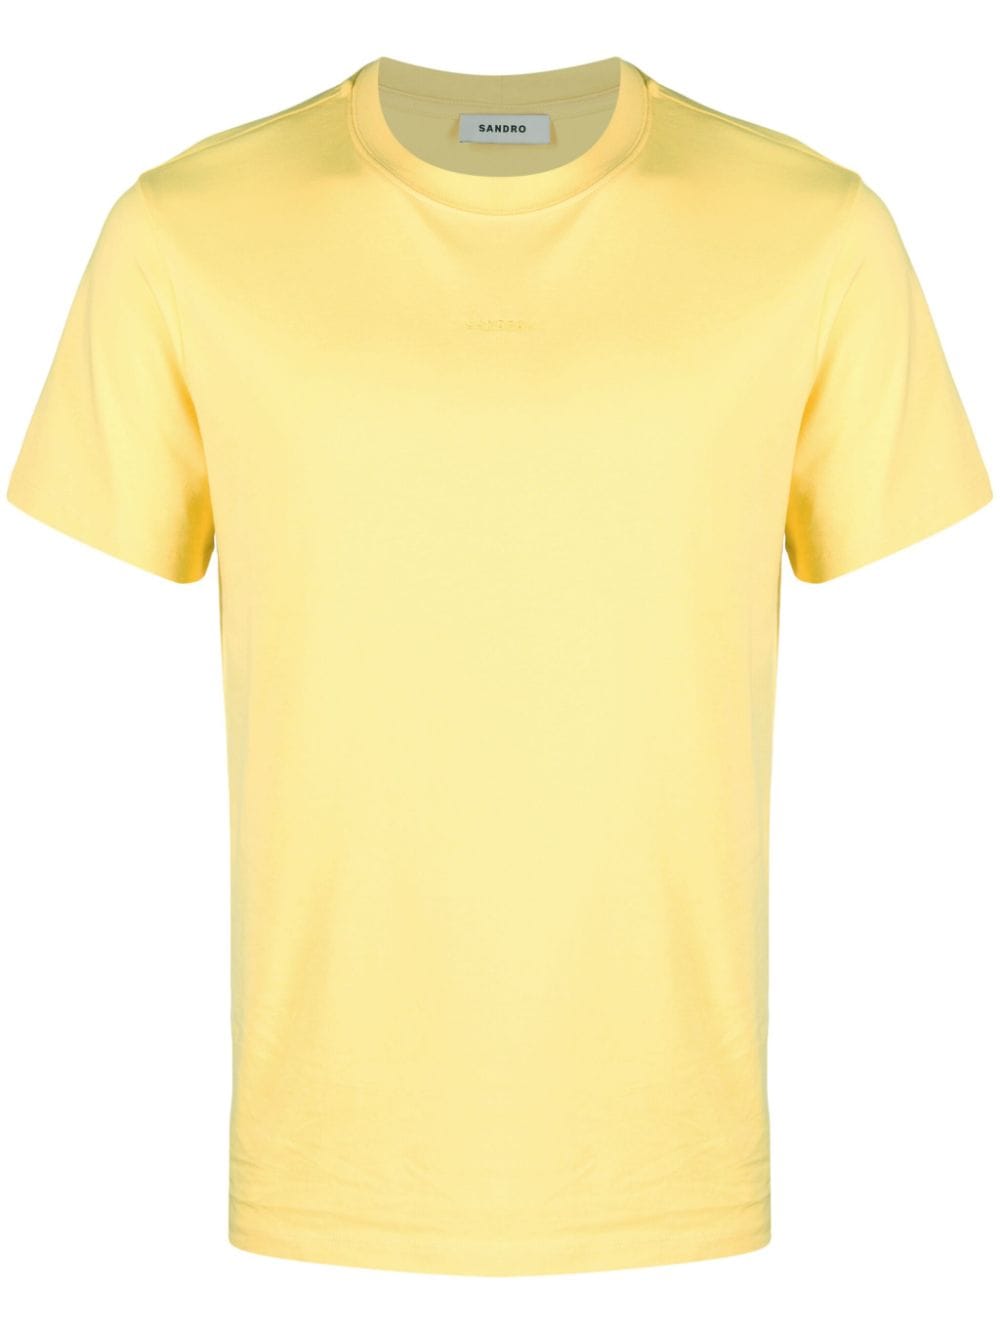 SANDRO T-shirt con ricamo - Giallo